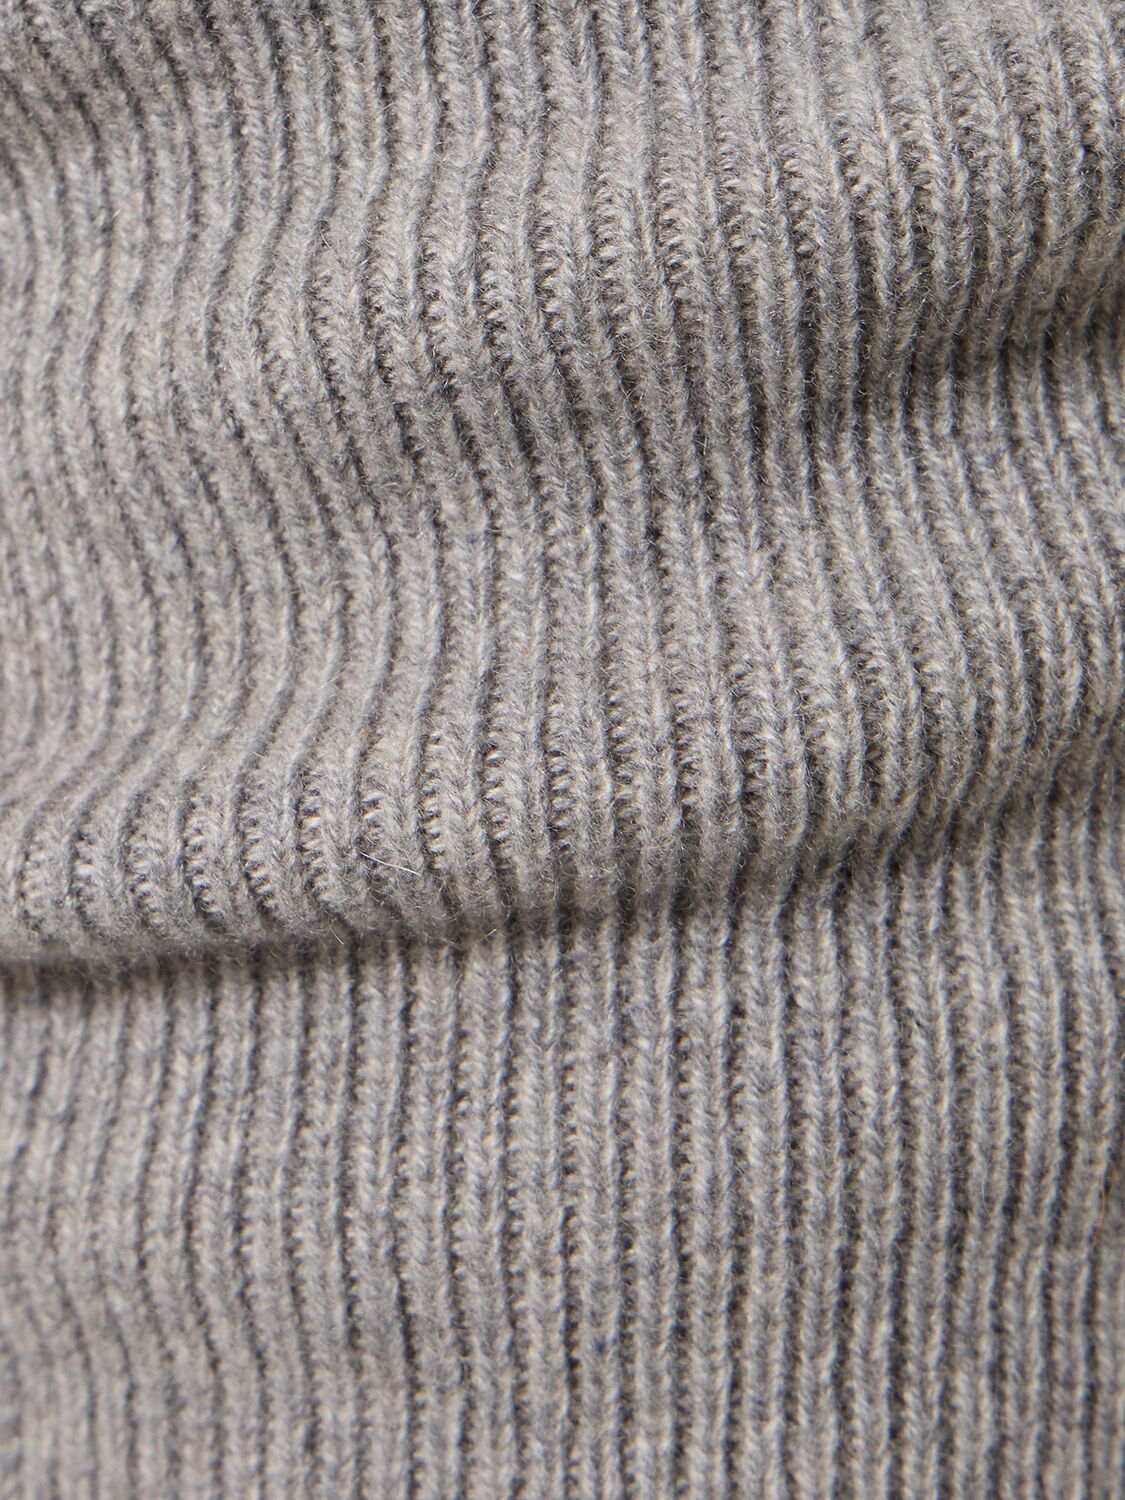 Shop Magda Butrym Rib Knit Cashmere Leggings In Grey